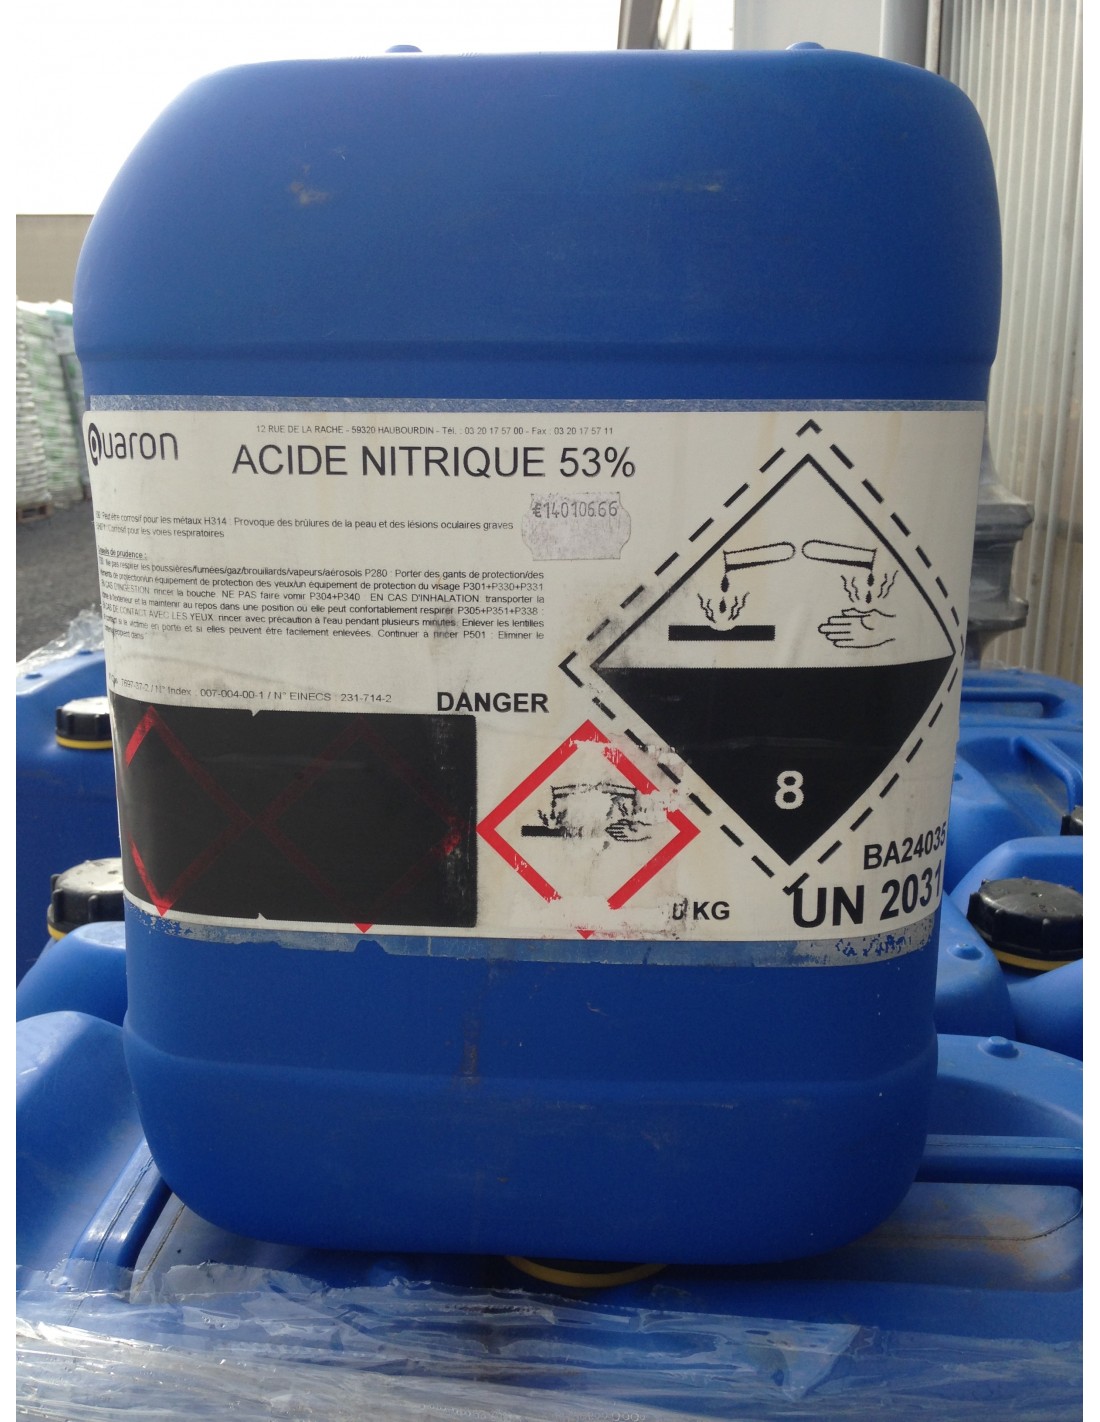 Acide nitrique 10% aqueuse ESCIL - Matériels et consommables pour